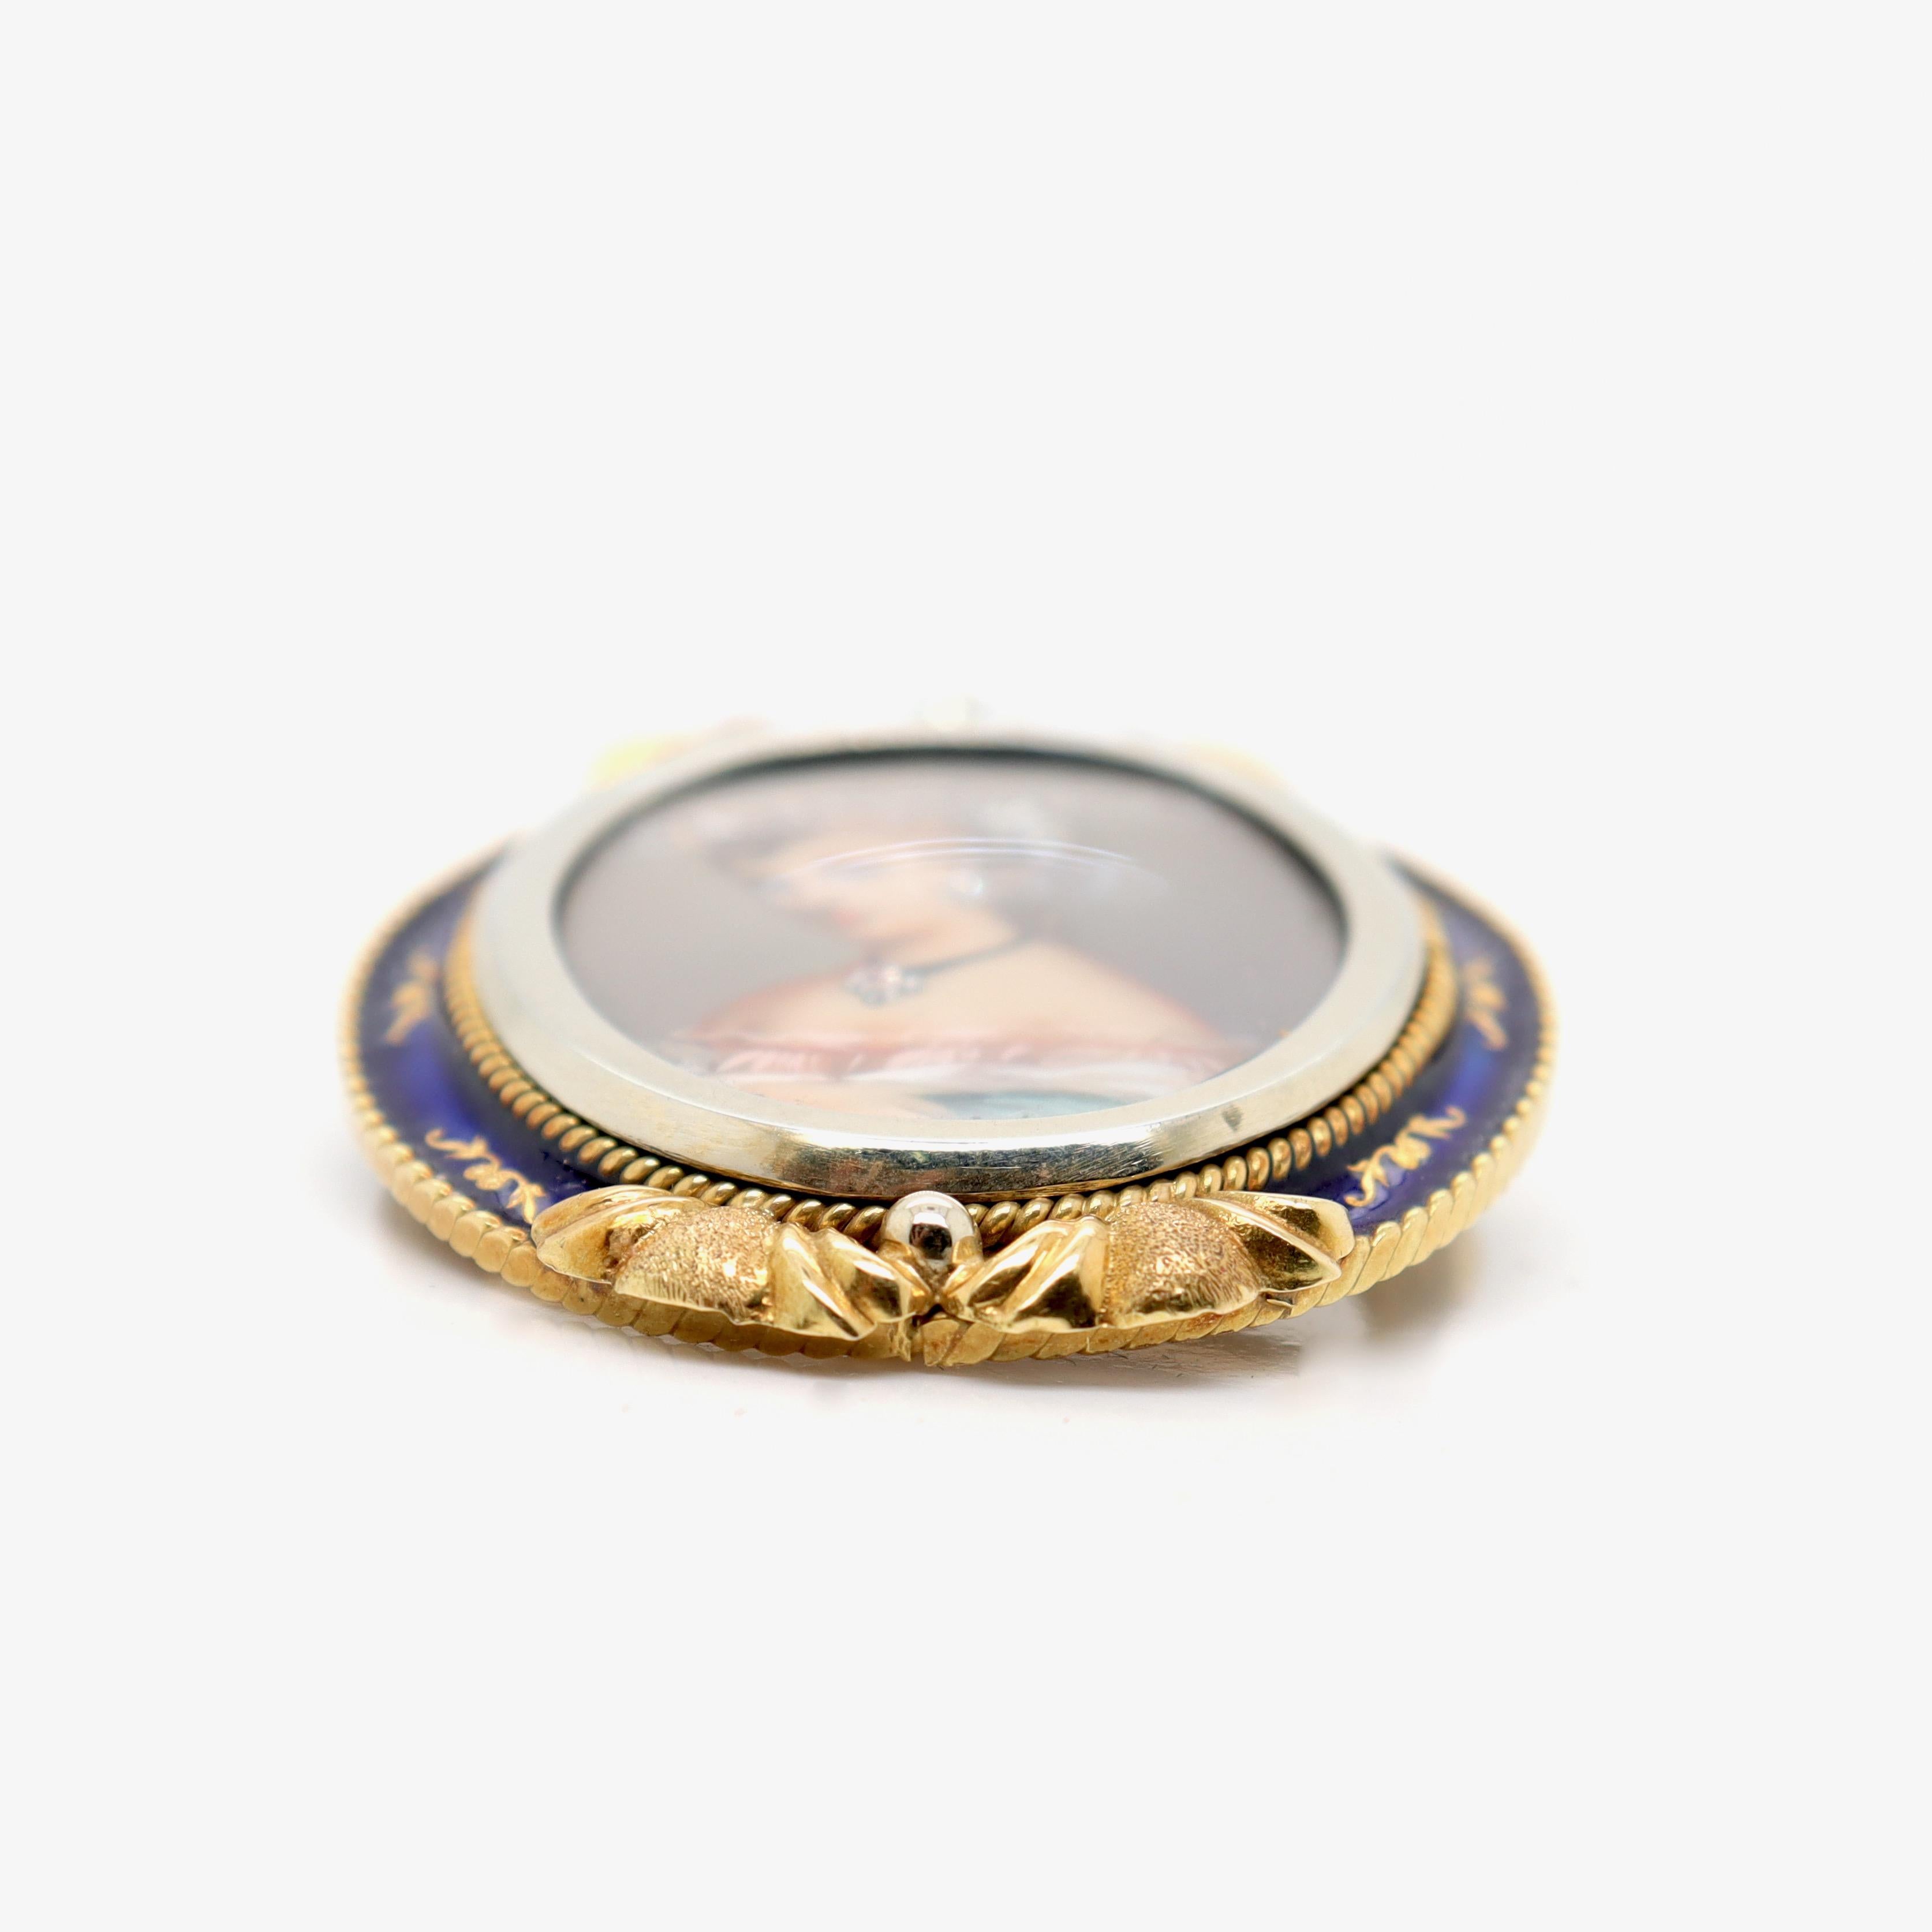 Vintage Corletto 18K Gold & Blue Enamel Portrait Miniature Brooch or Pendant For Sale 5